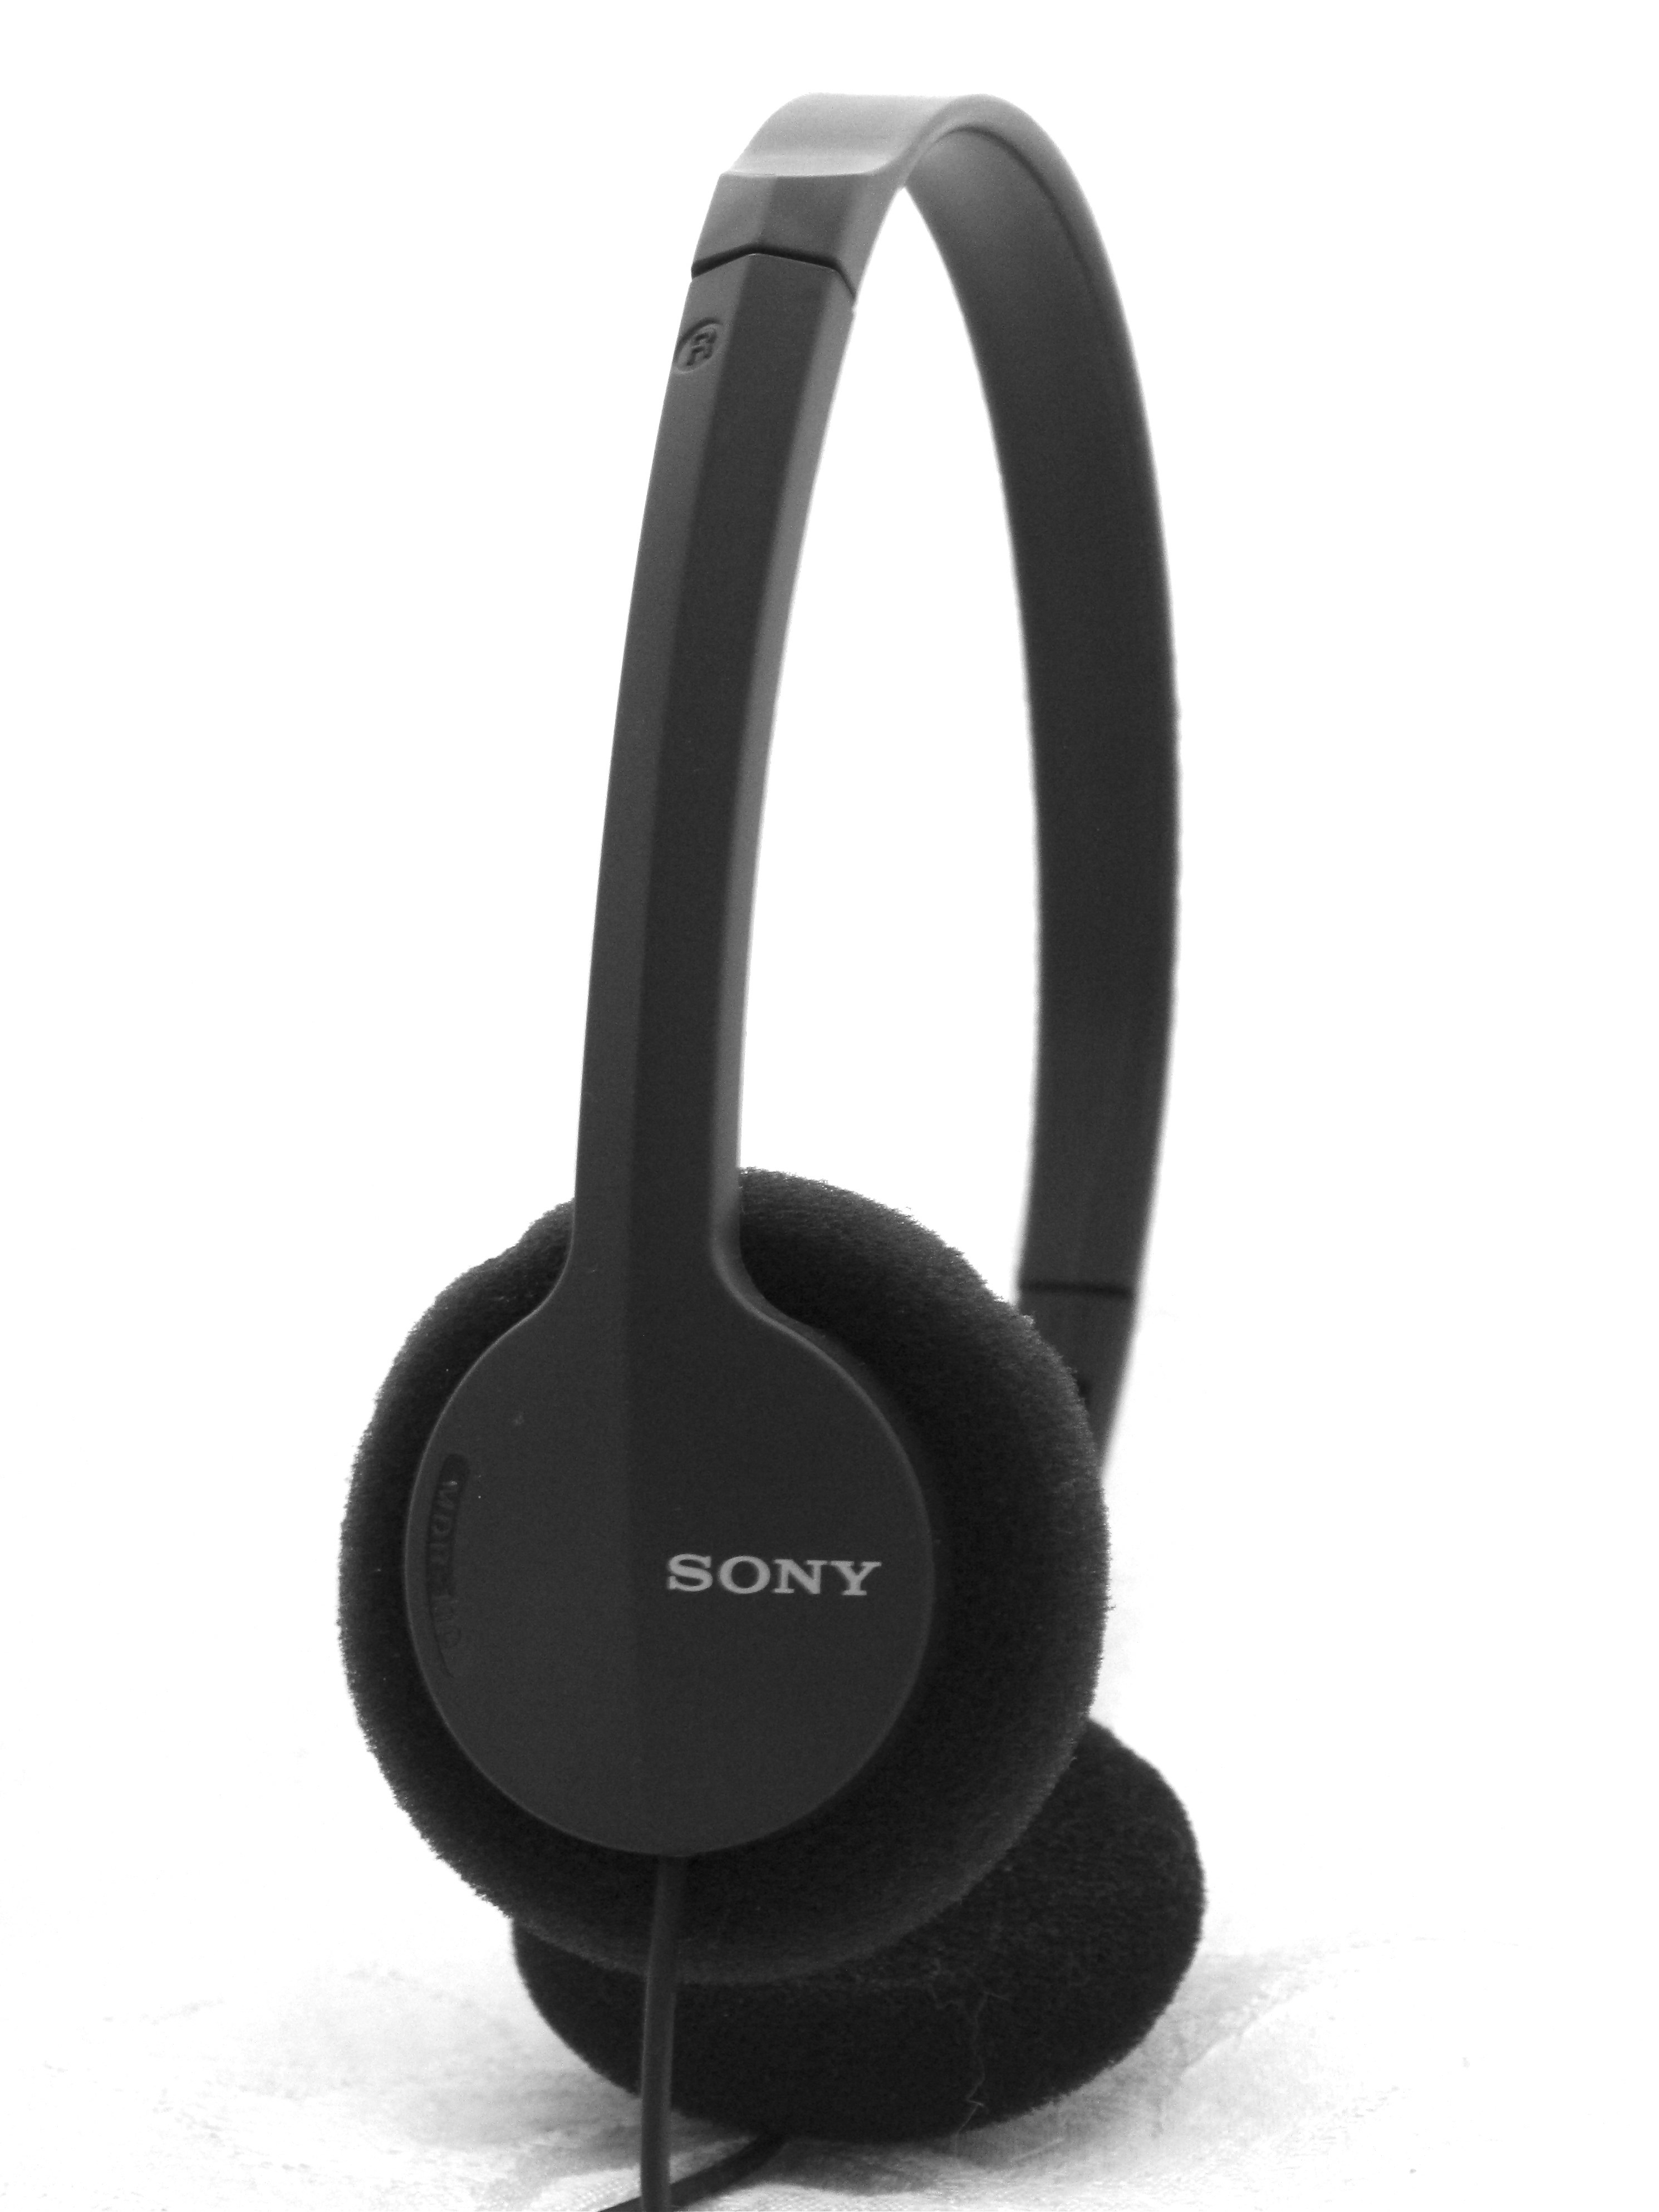 Black Sony headphones